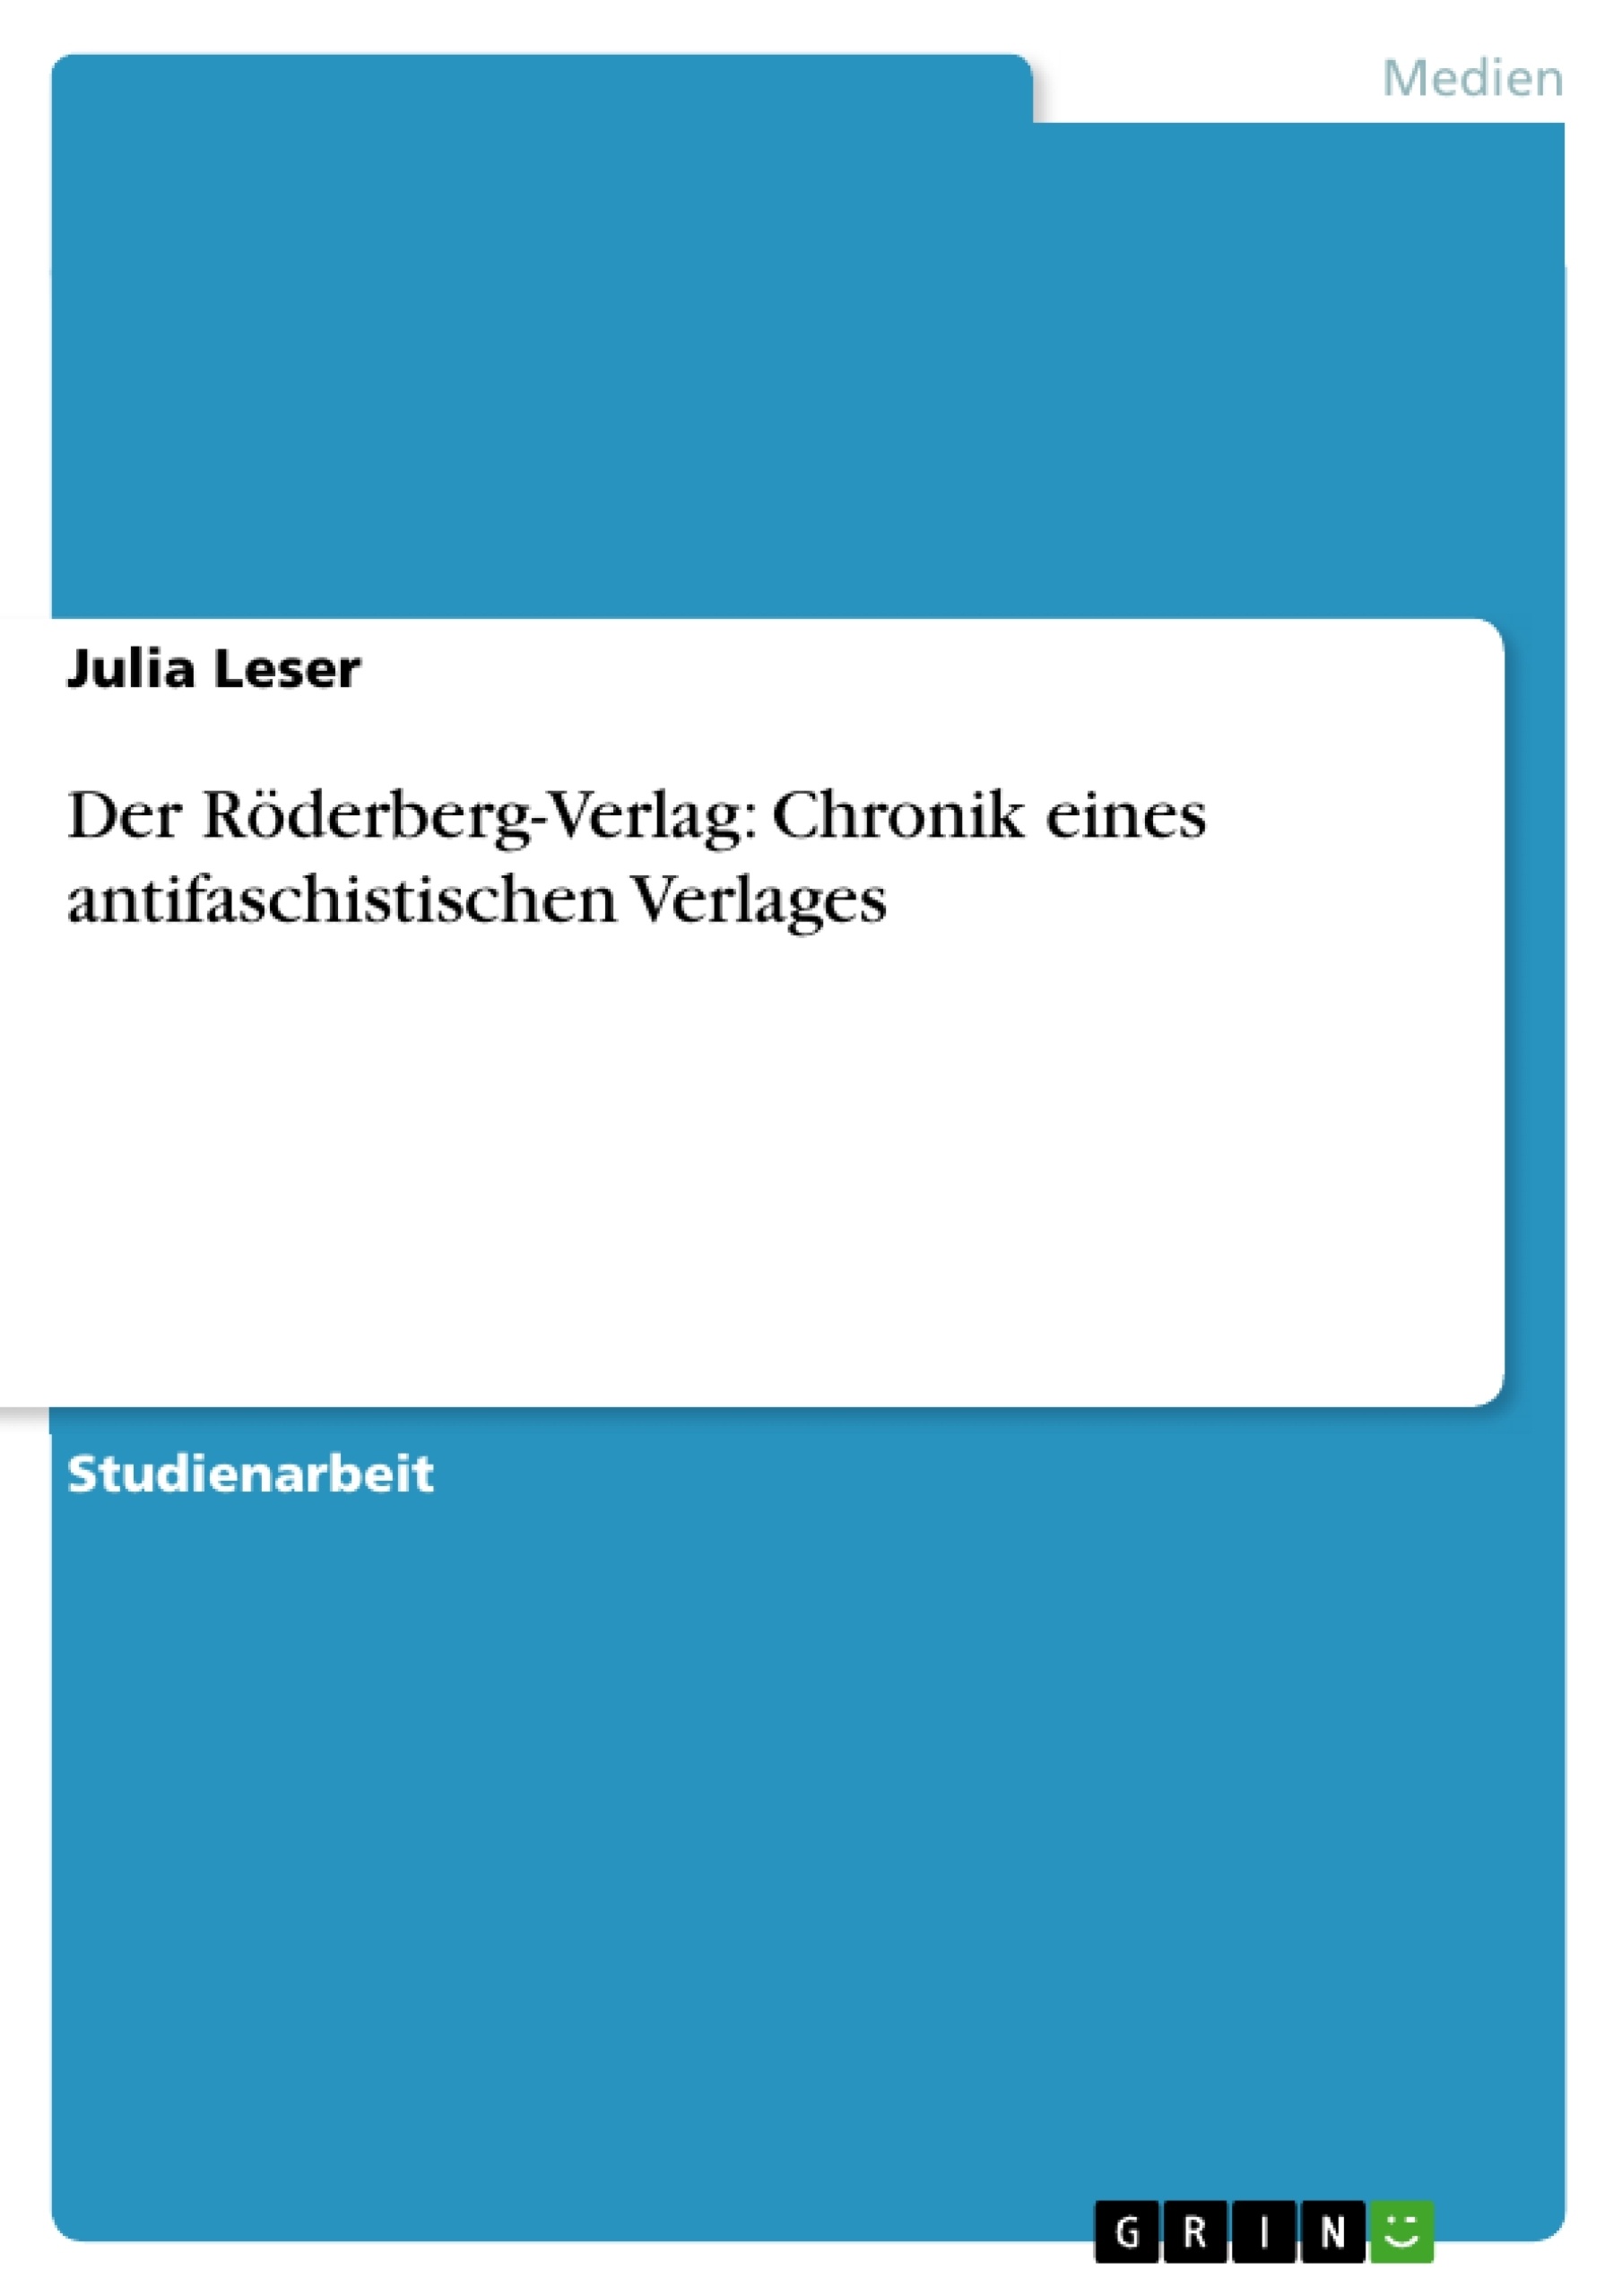 Título: Der Röderberg-Verlag: Chronik eines antifaschistischen Verlages